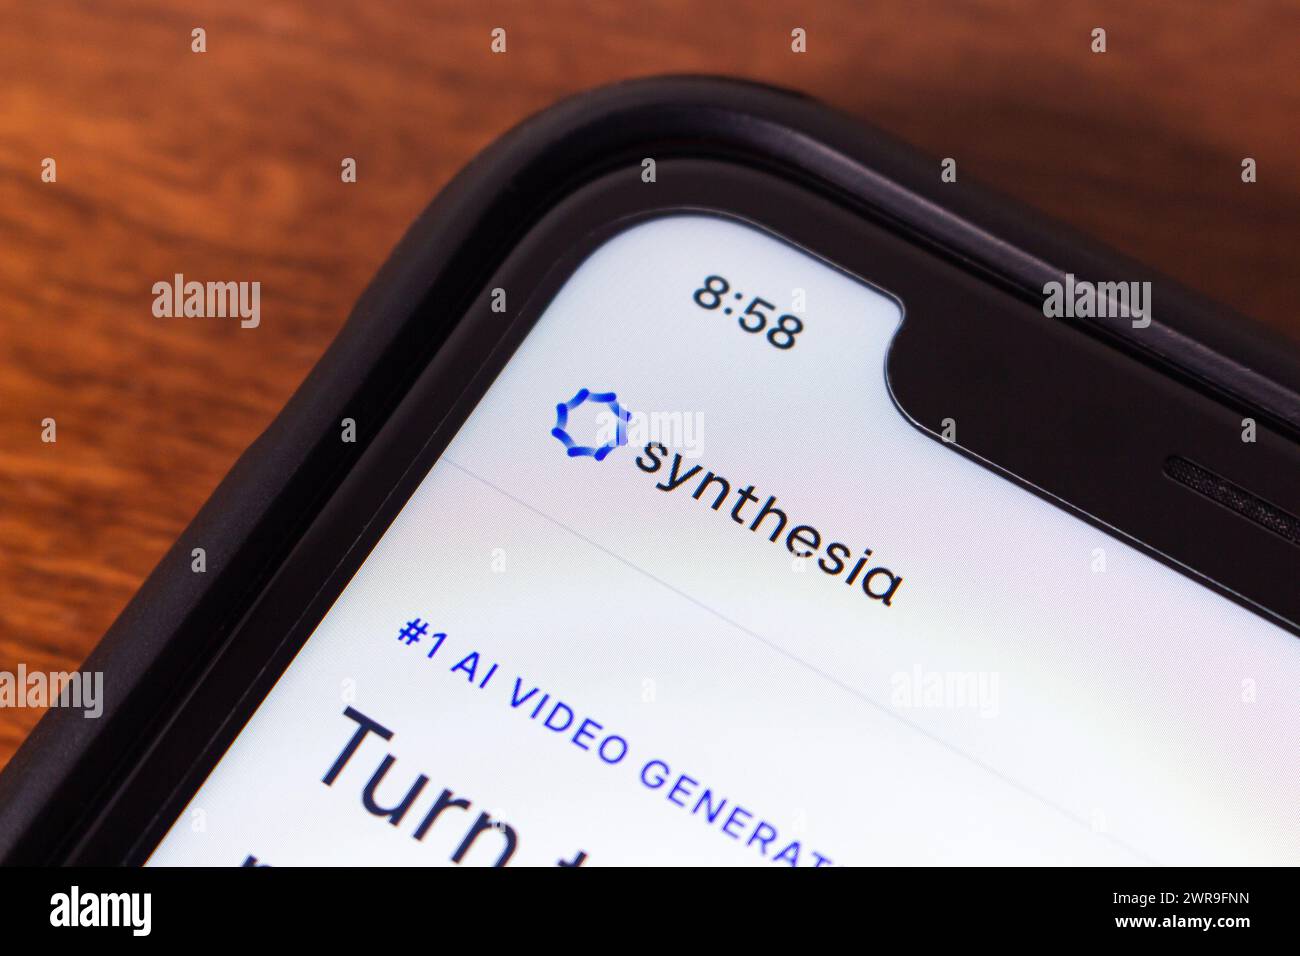 Synthesia-Website auf dem iPhone. Synthesia ist ein britisches Unternehmen zur Erzeugung synthetischer Medien, das Software zur Erstellung von KI-generierten Videoinhalten entwickelt Stockfoto